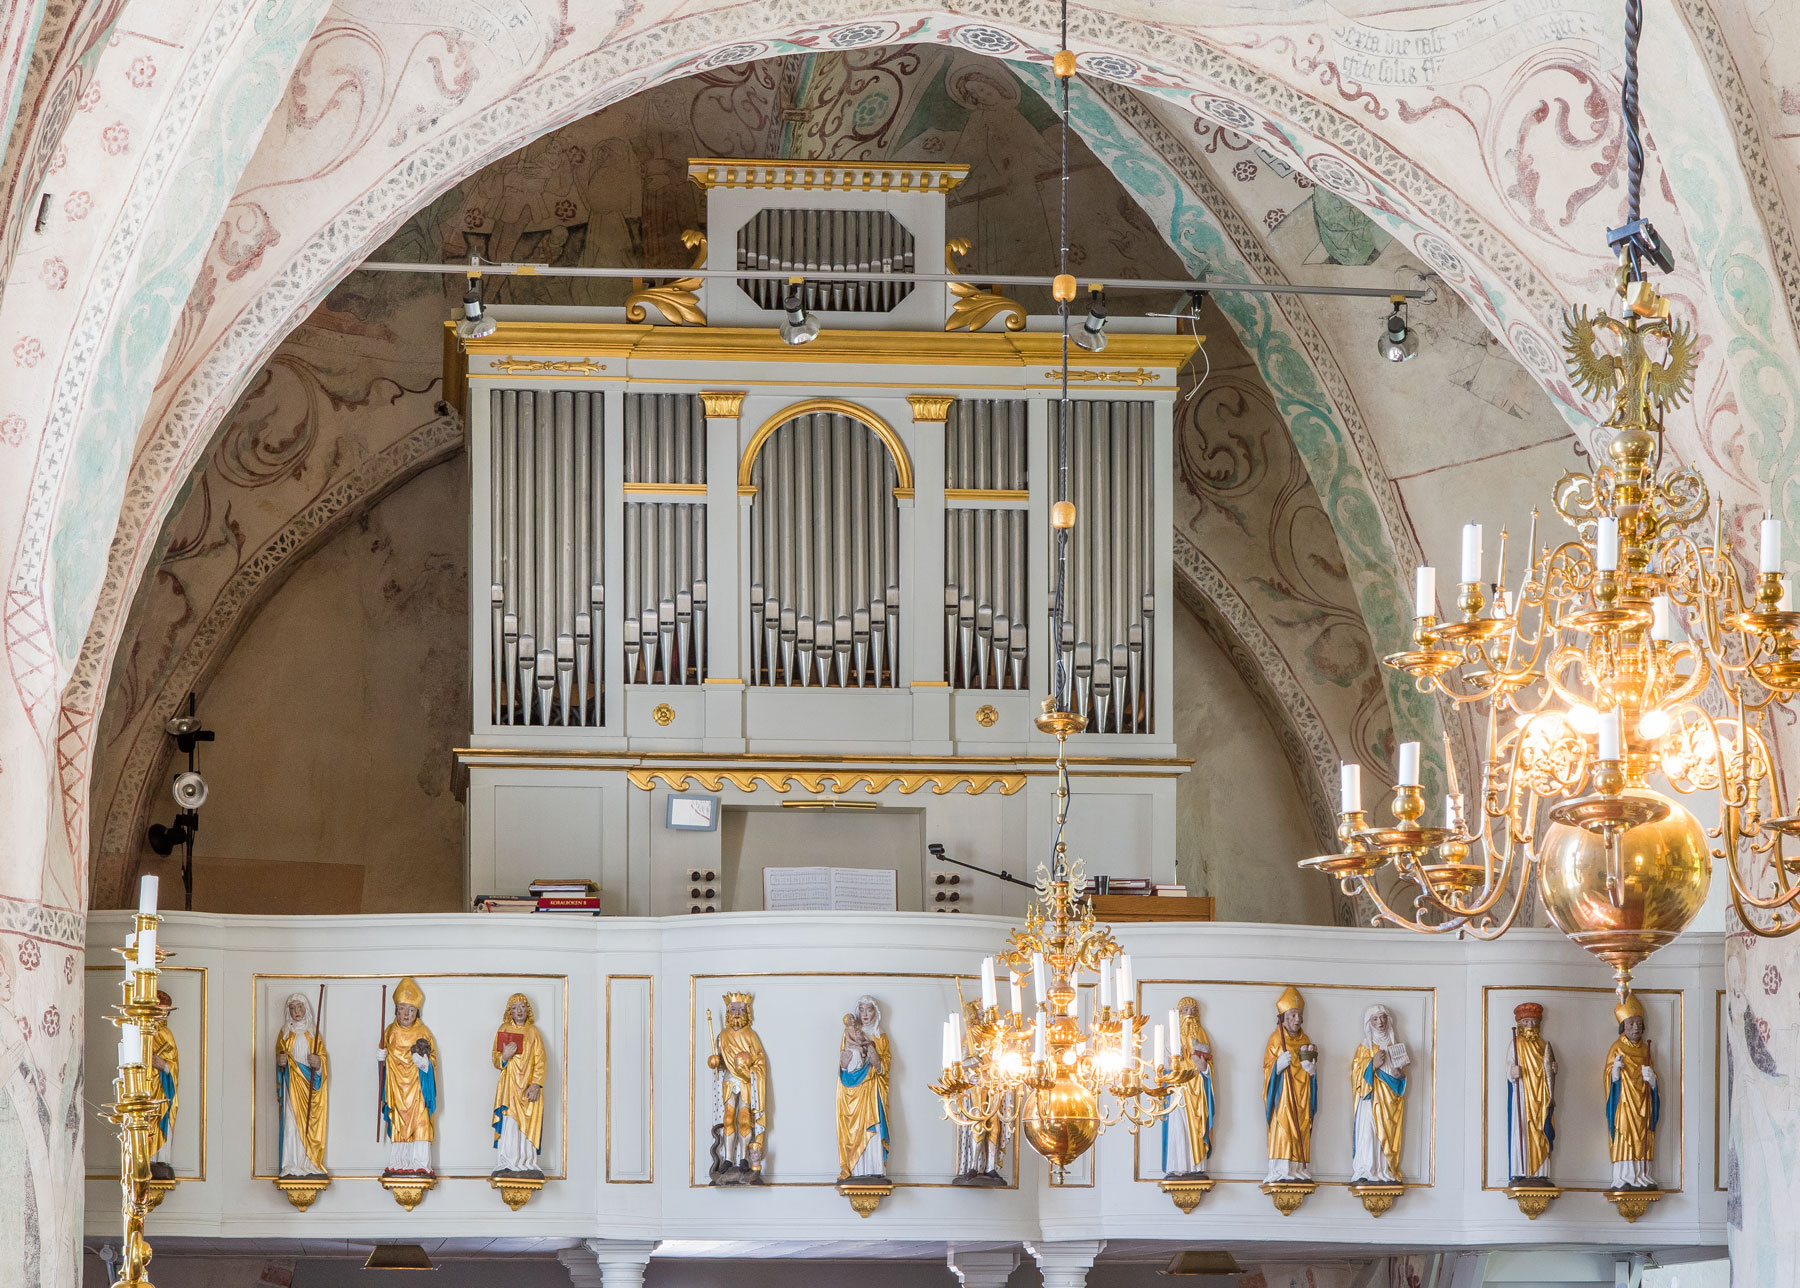 Orgel - Övergrans kyrka